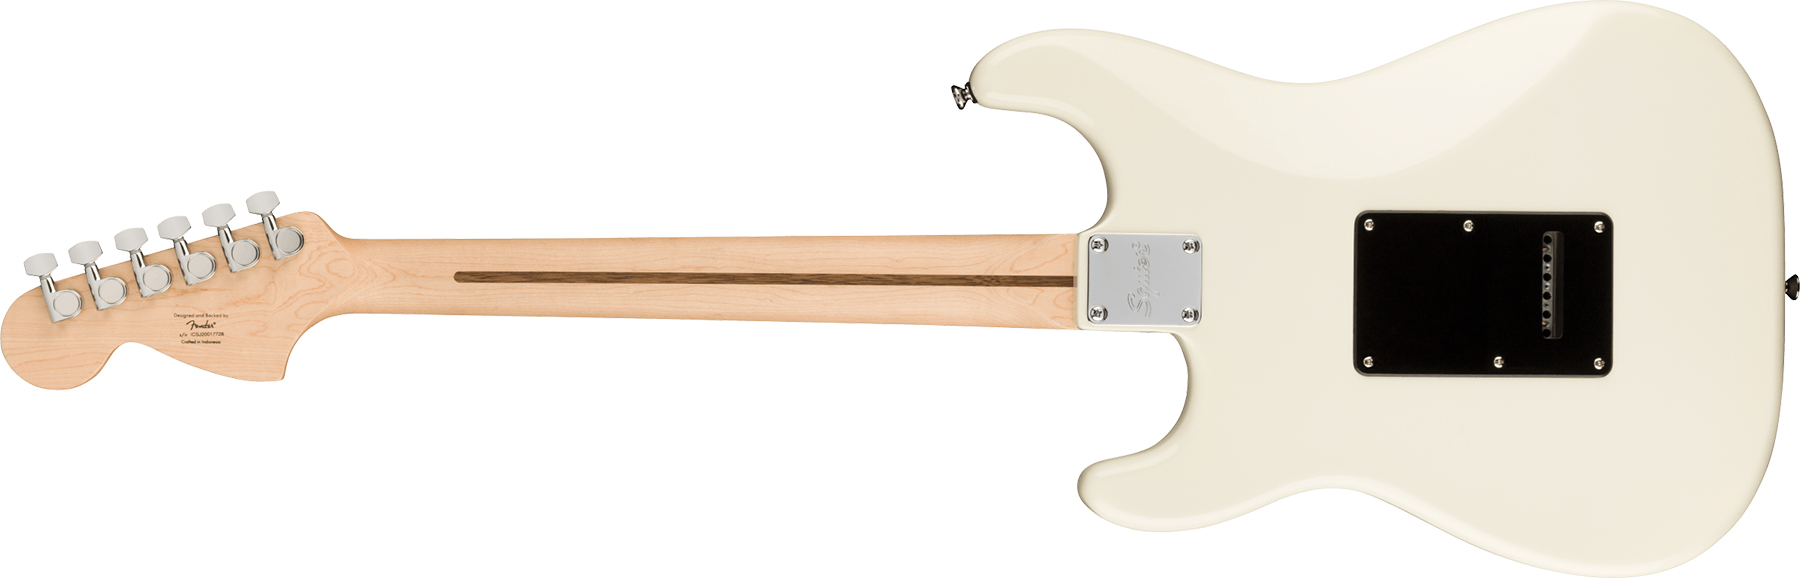 Squier Strat Affinity 2021 Hh Trem Lau - Olympic White - Elektrische gitaar in Str-vorm - Variation 1